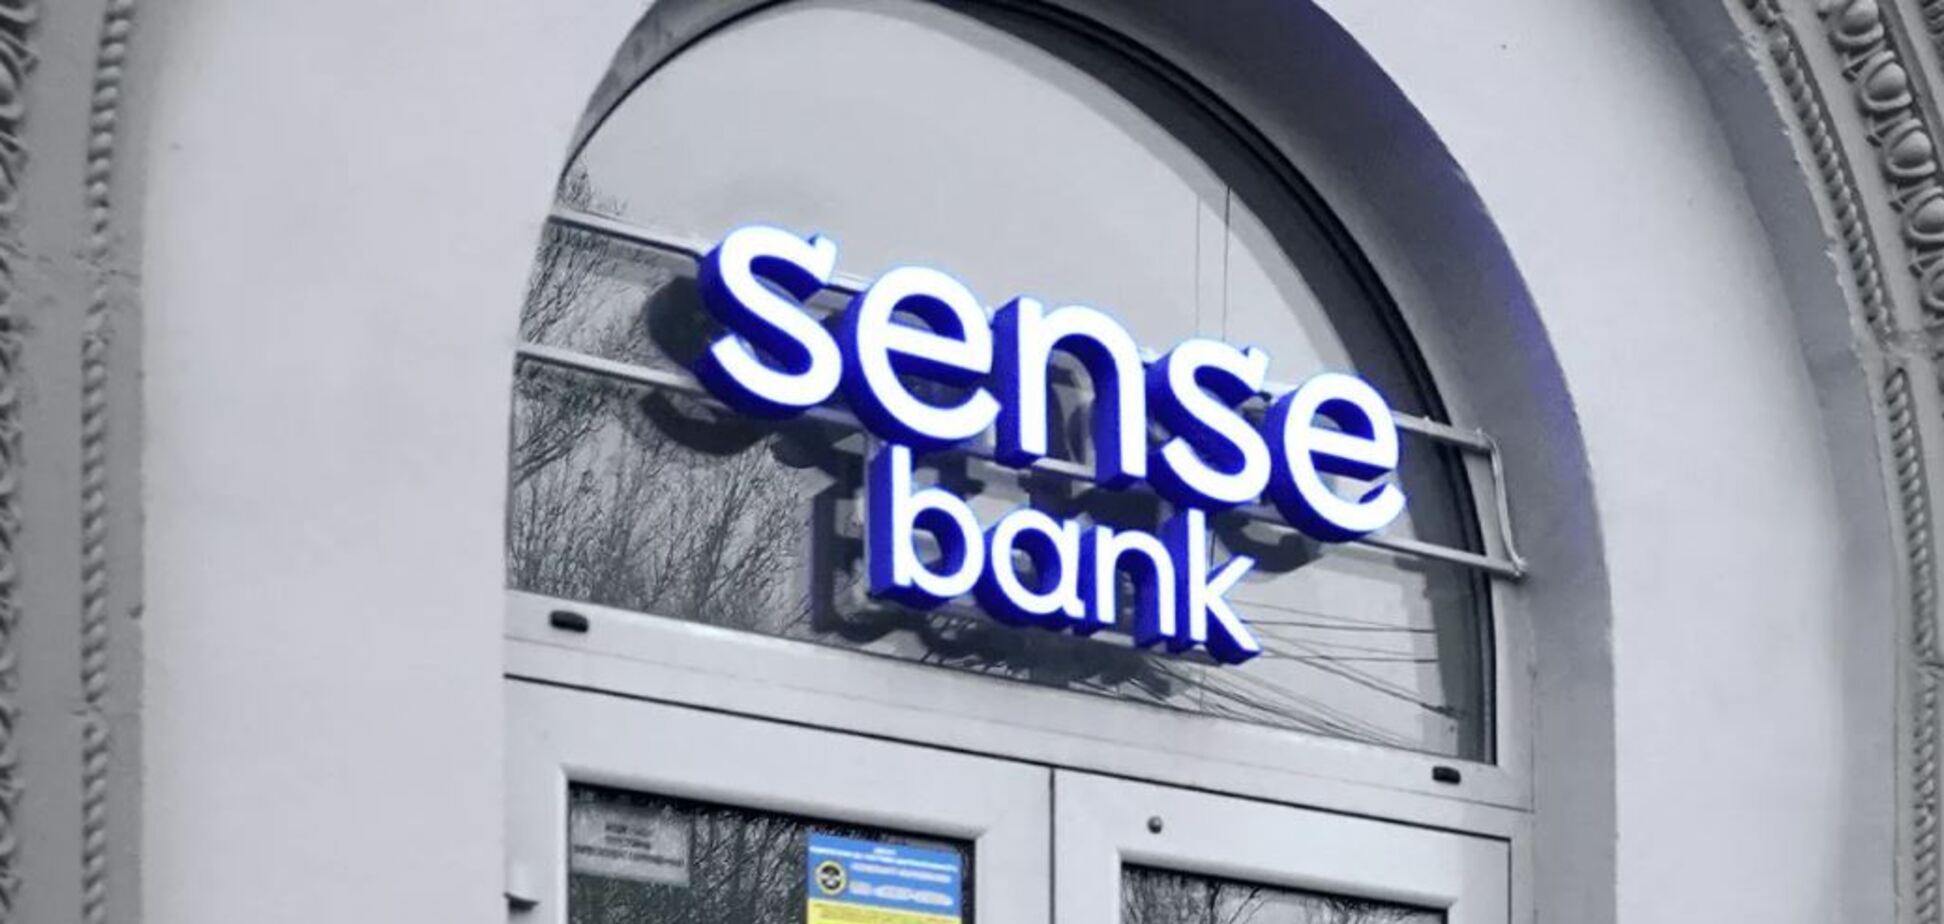 Sense Bank стал одним из банков-партнеров продаж военных облигаций 'Евпатория'